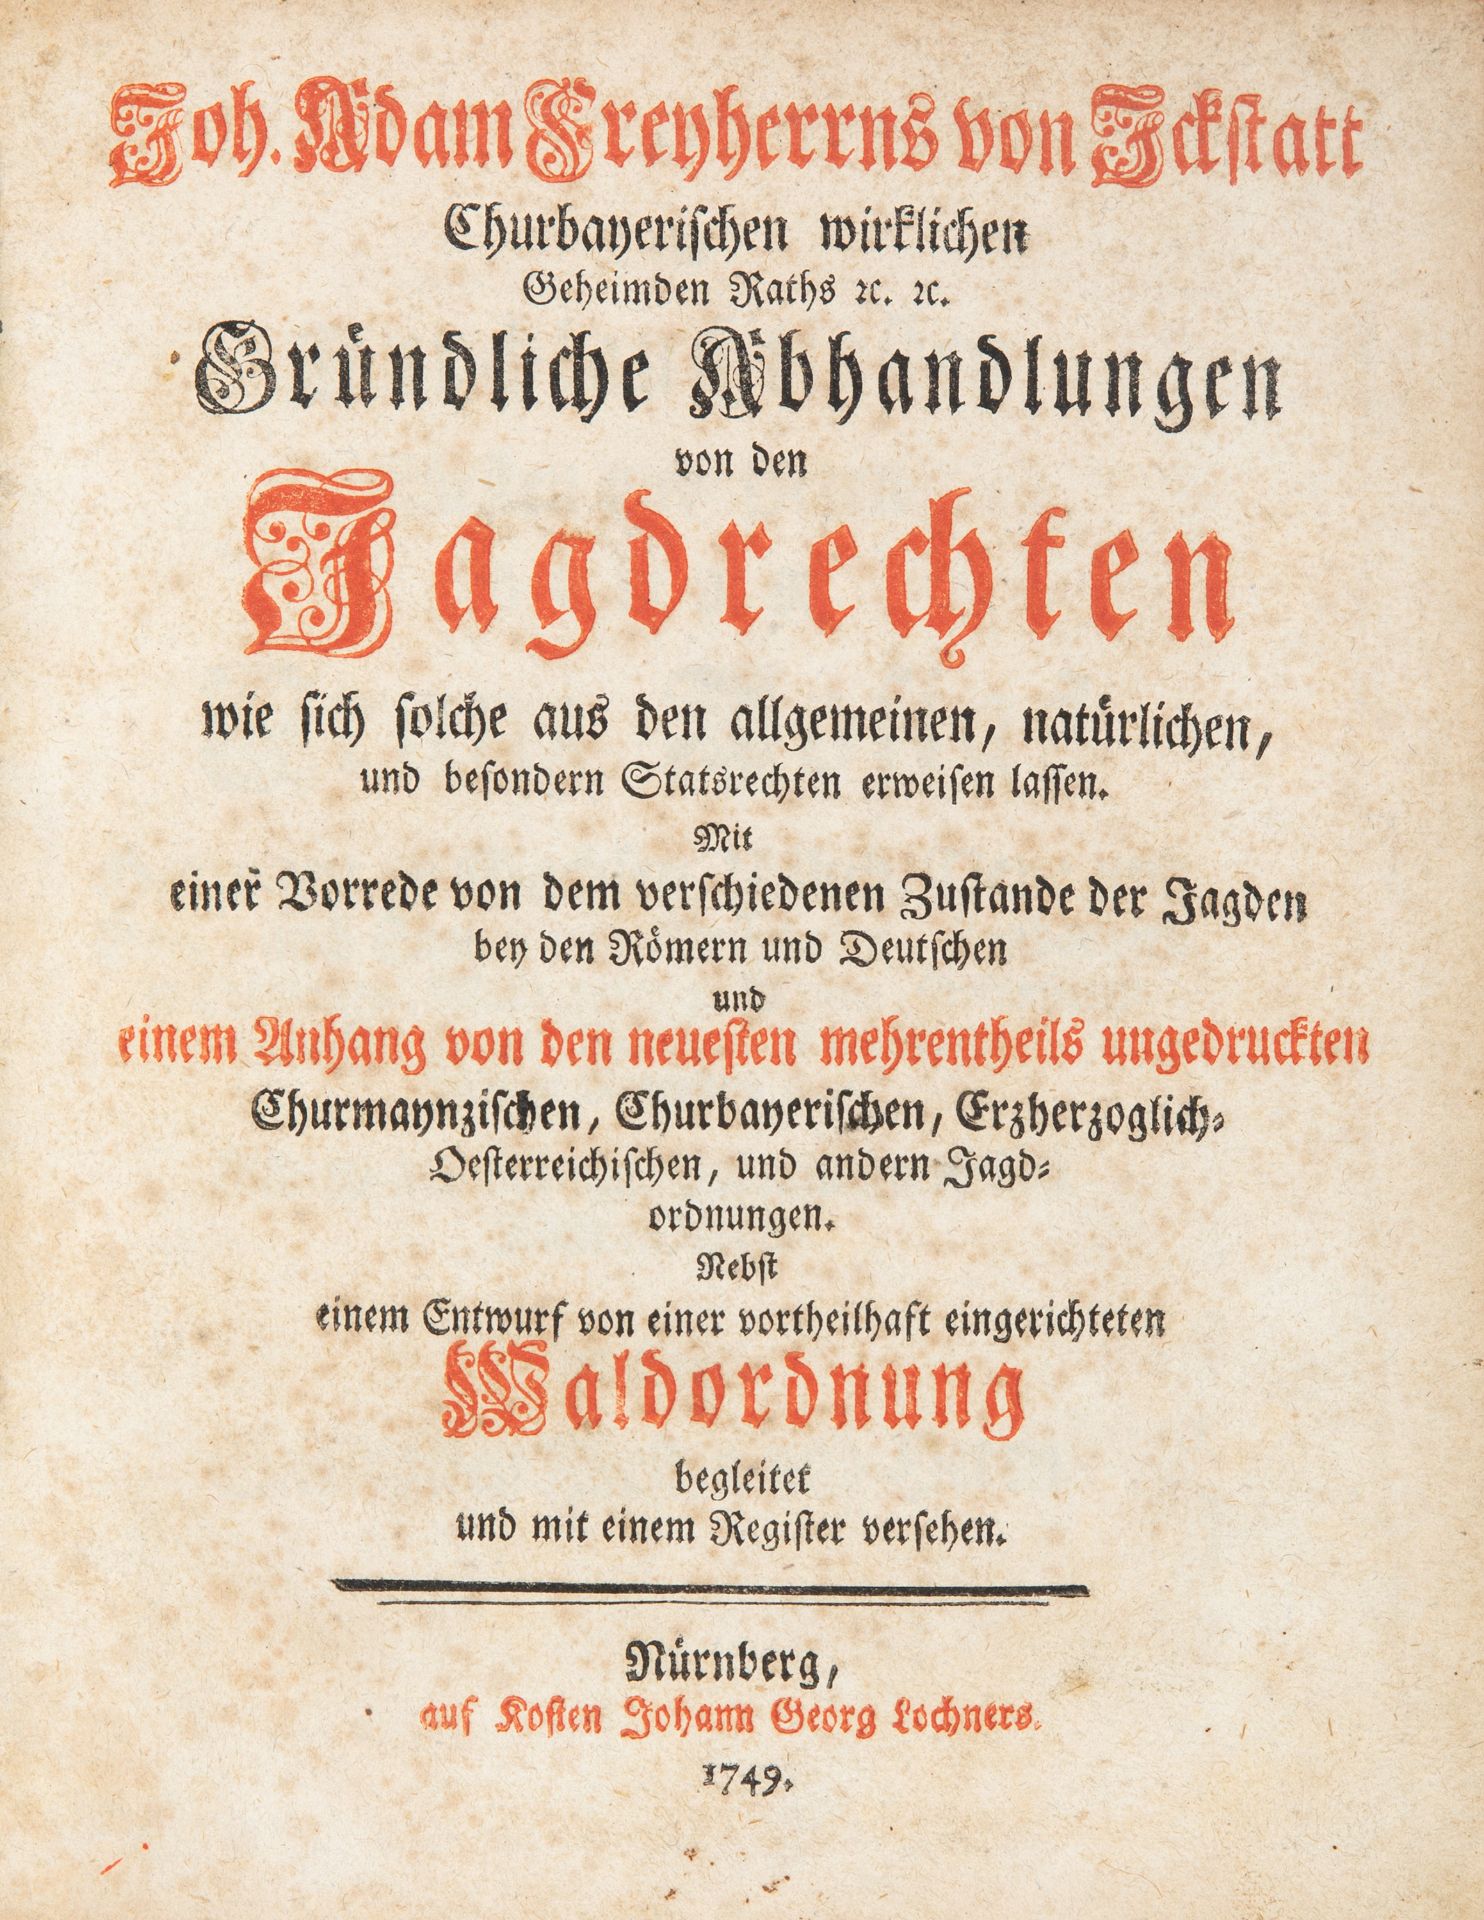 J. A. von Ickstatt, Gründliche Abhandlungen von den Jagdrechten. Nürnberg 1749.